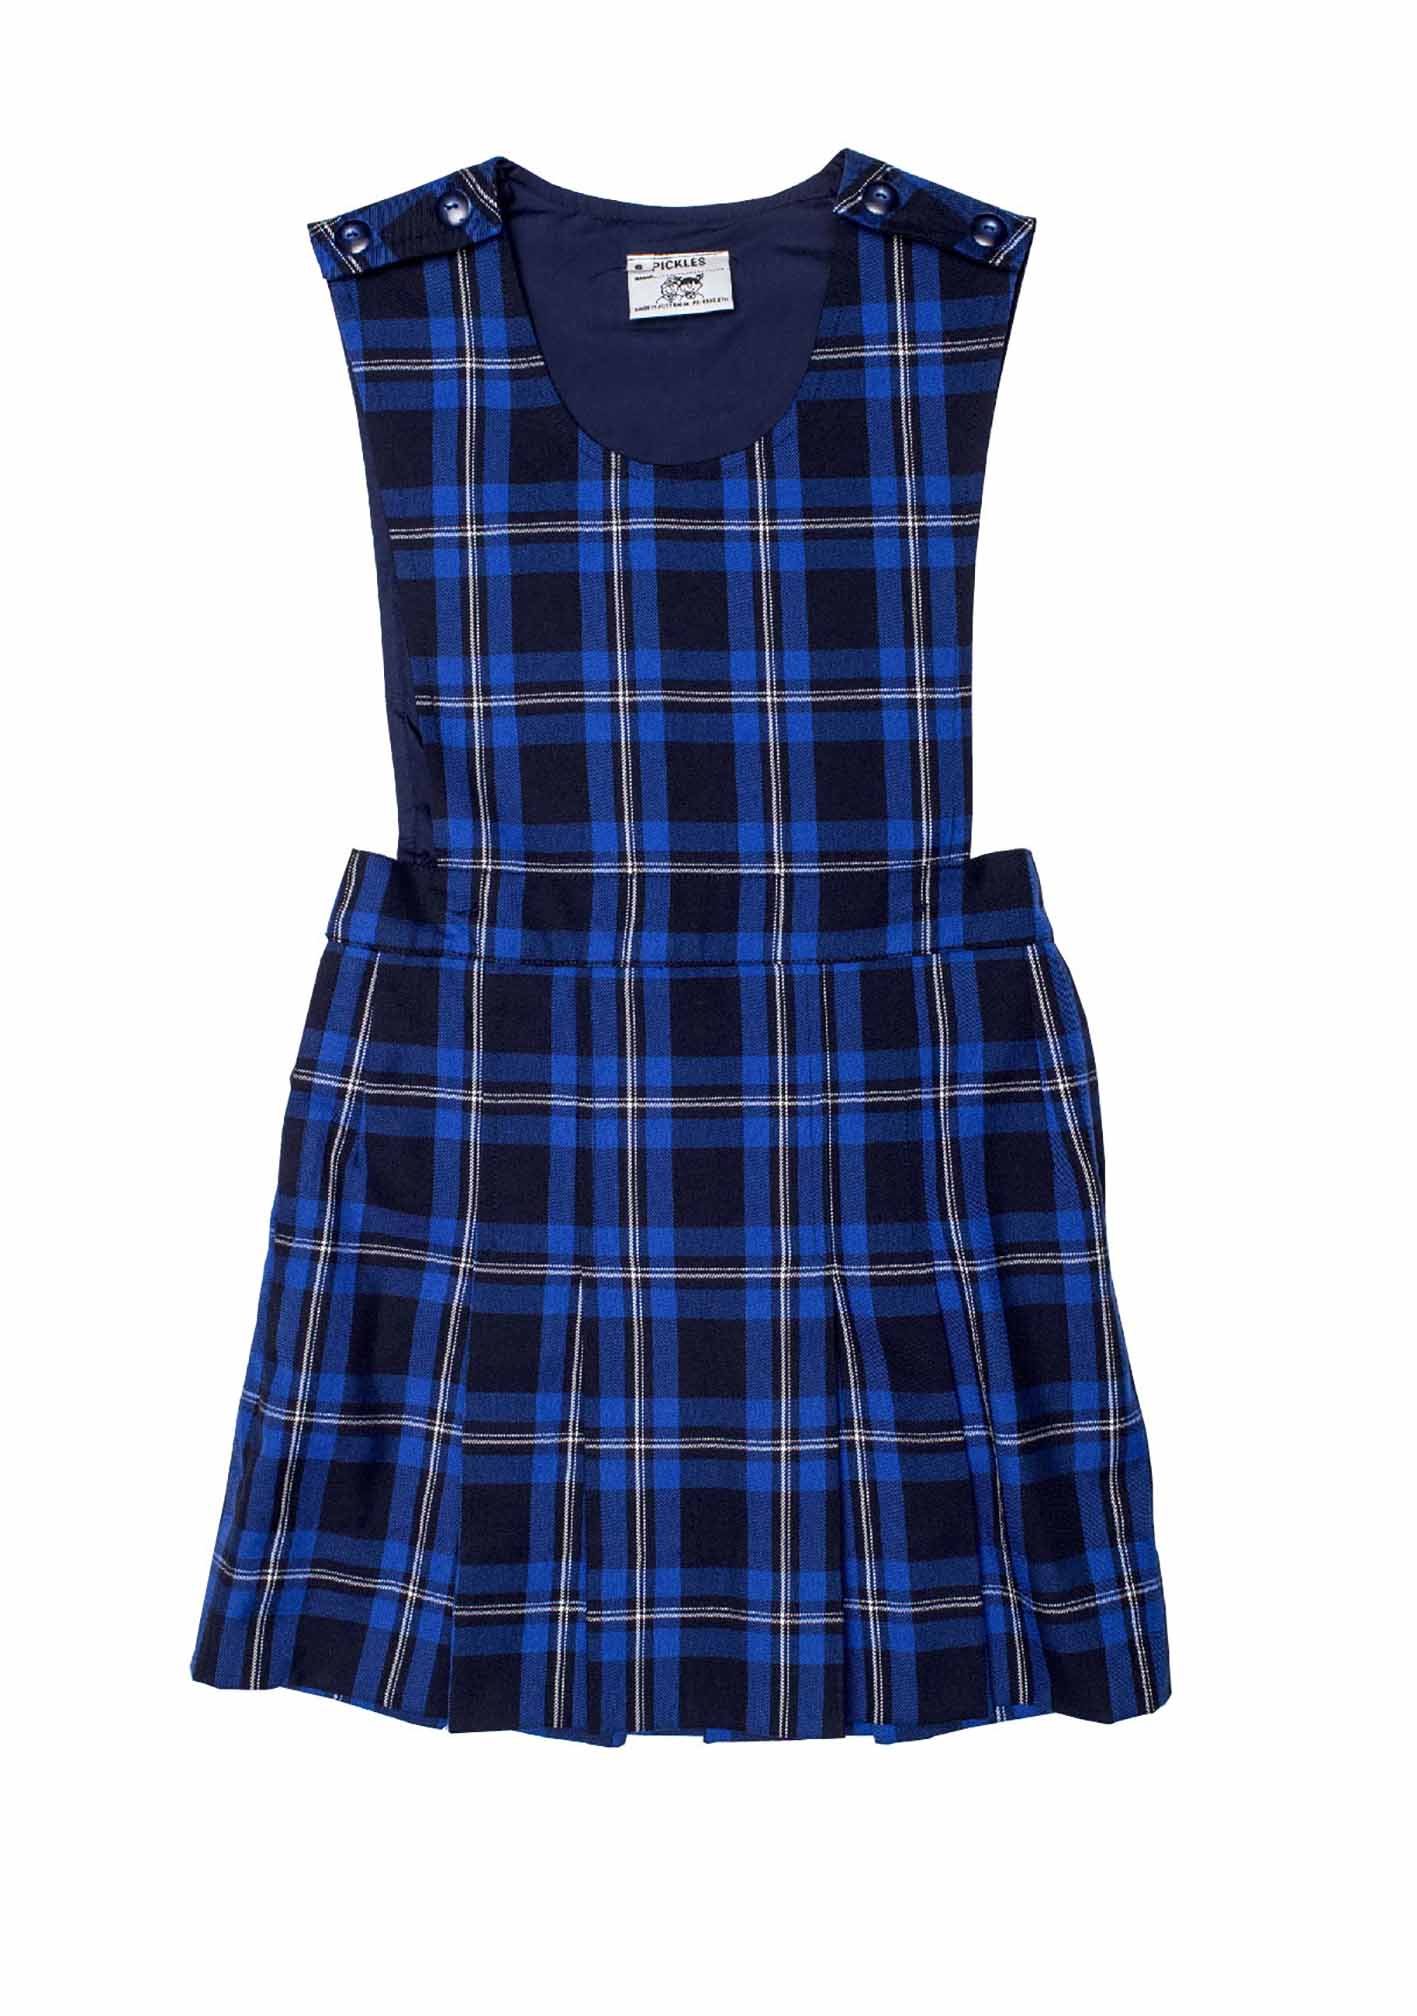 St Kierans Girls Winter Tunic | Shop at Pickles Schoolwear | School ...